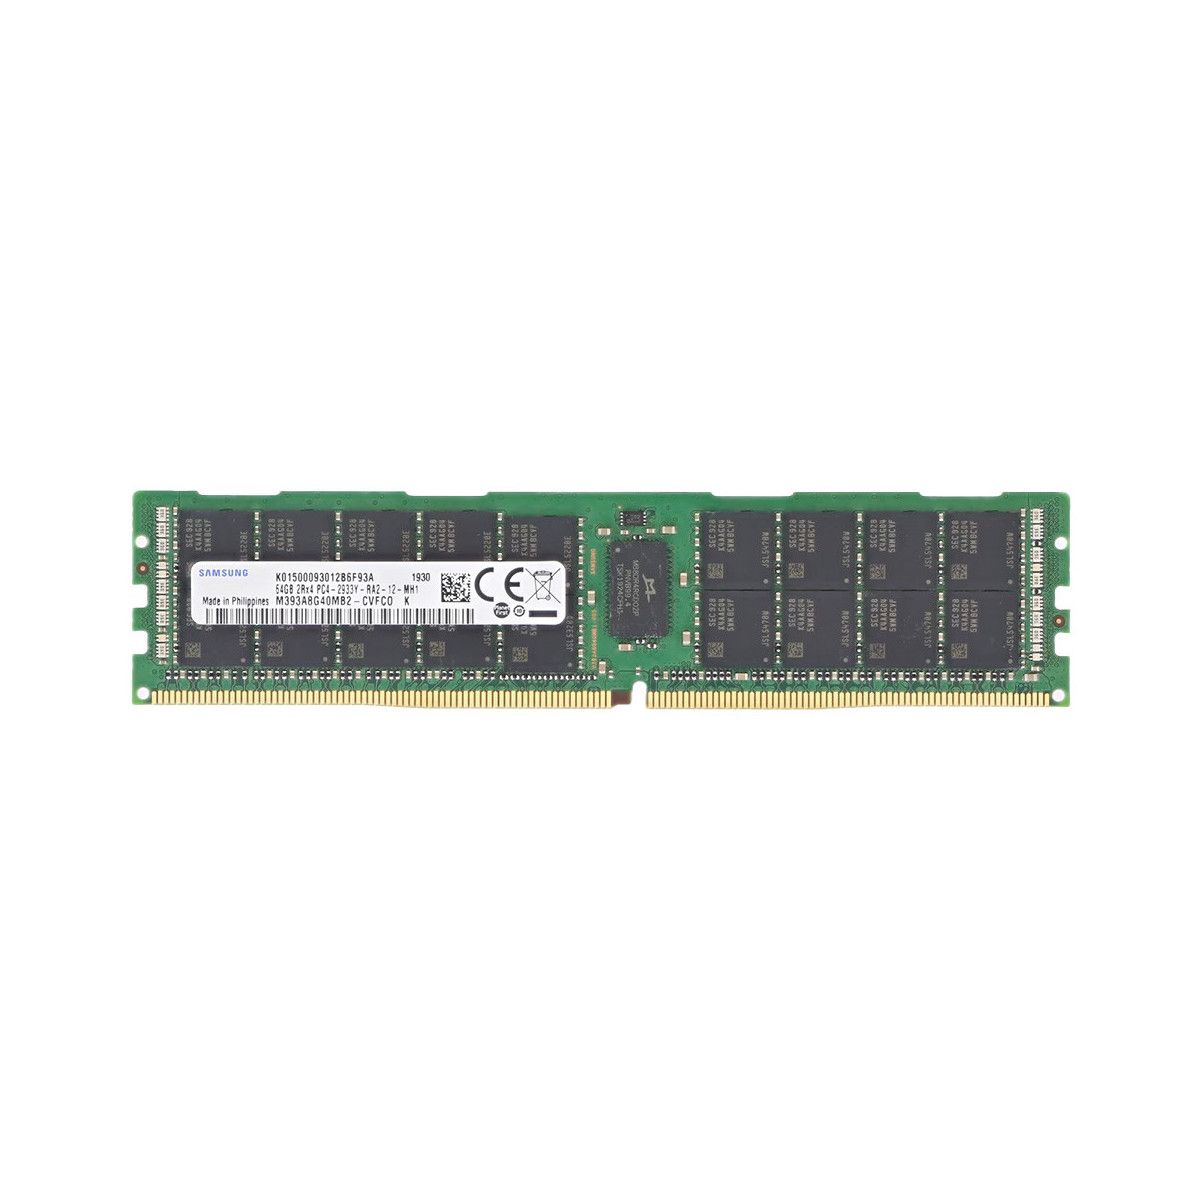 AA601615-MS - Memstar 1x 64GB DDR4-2933 RDIMM PC4-23466U-R - Mem-Star Kompatibel OEM Speichermedien 1 - Memstar 